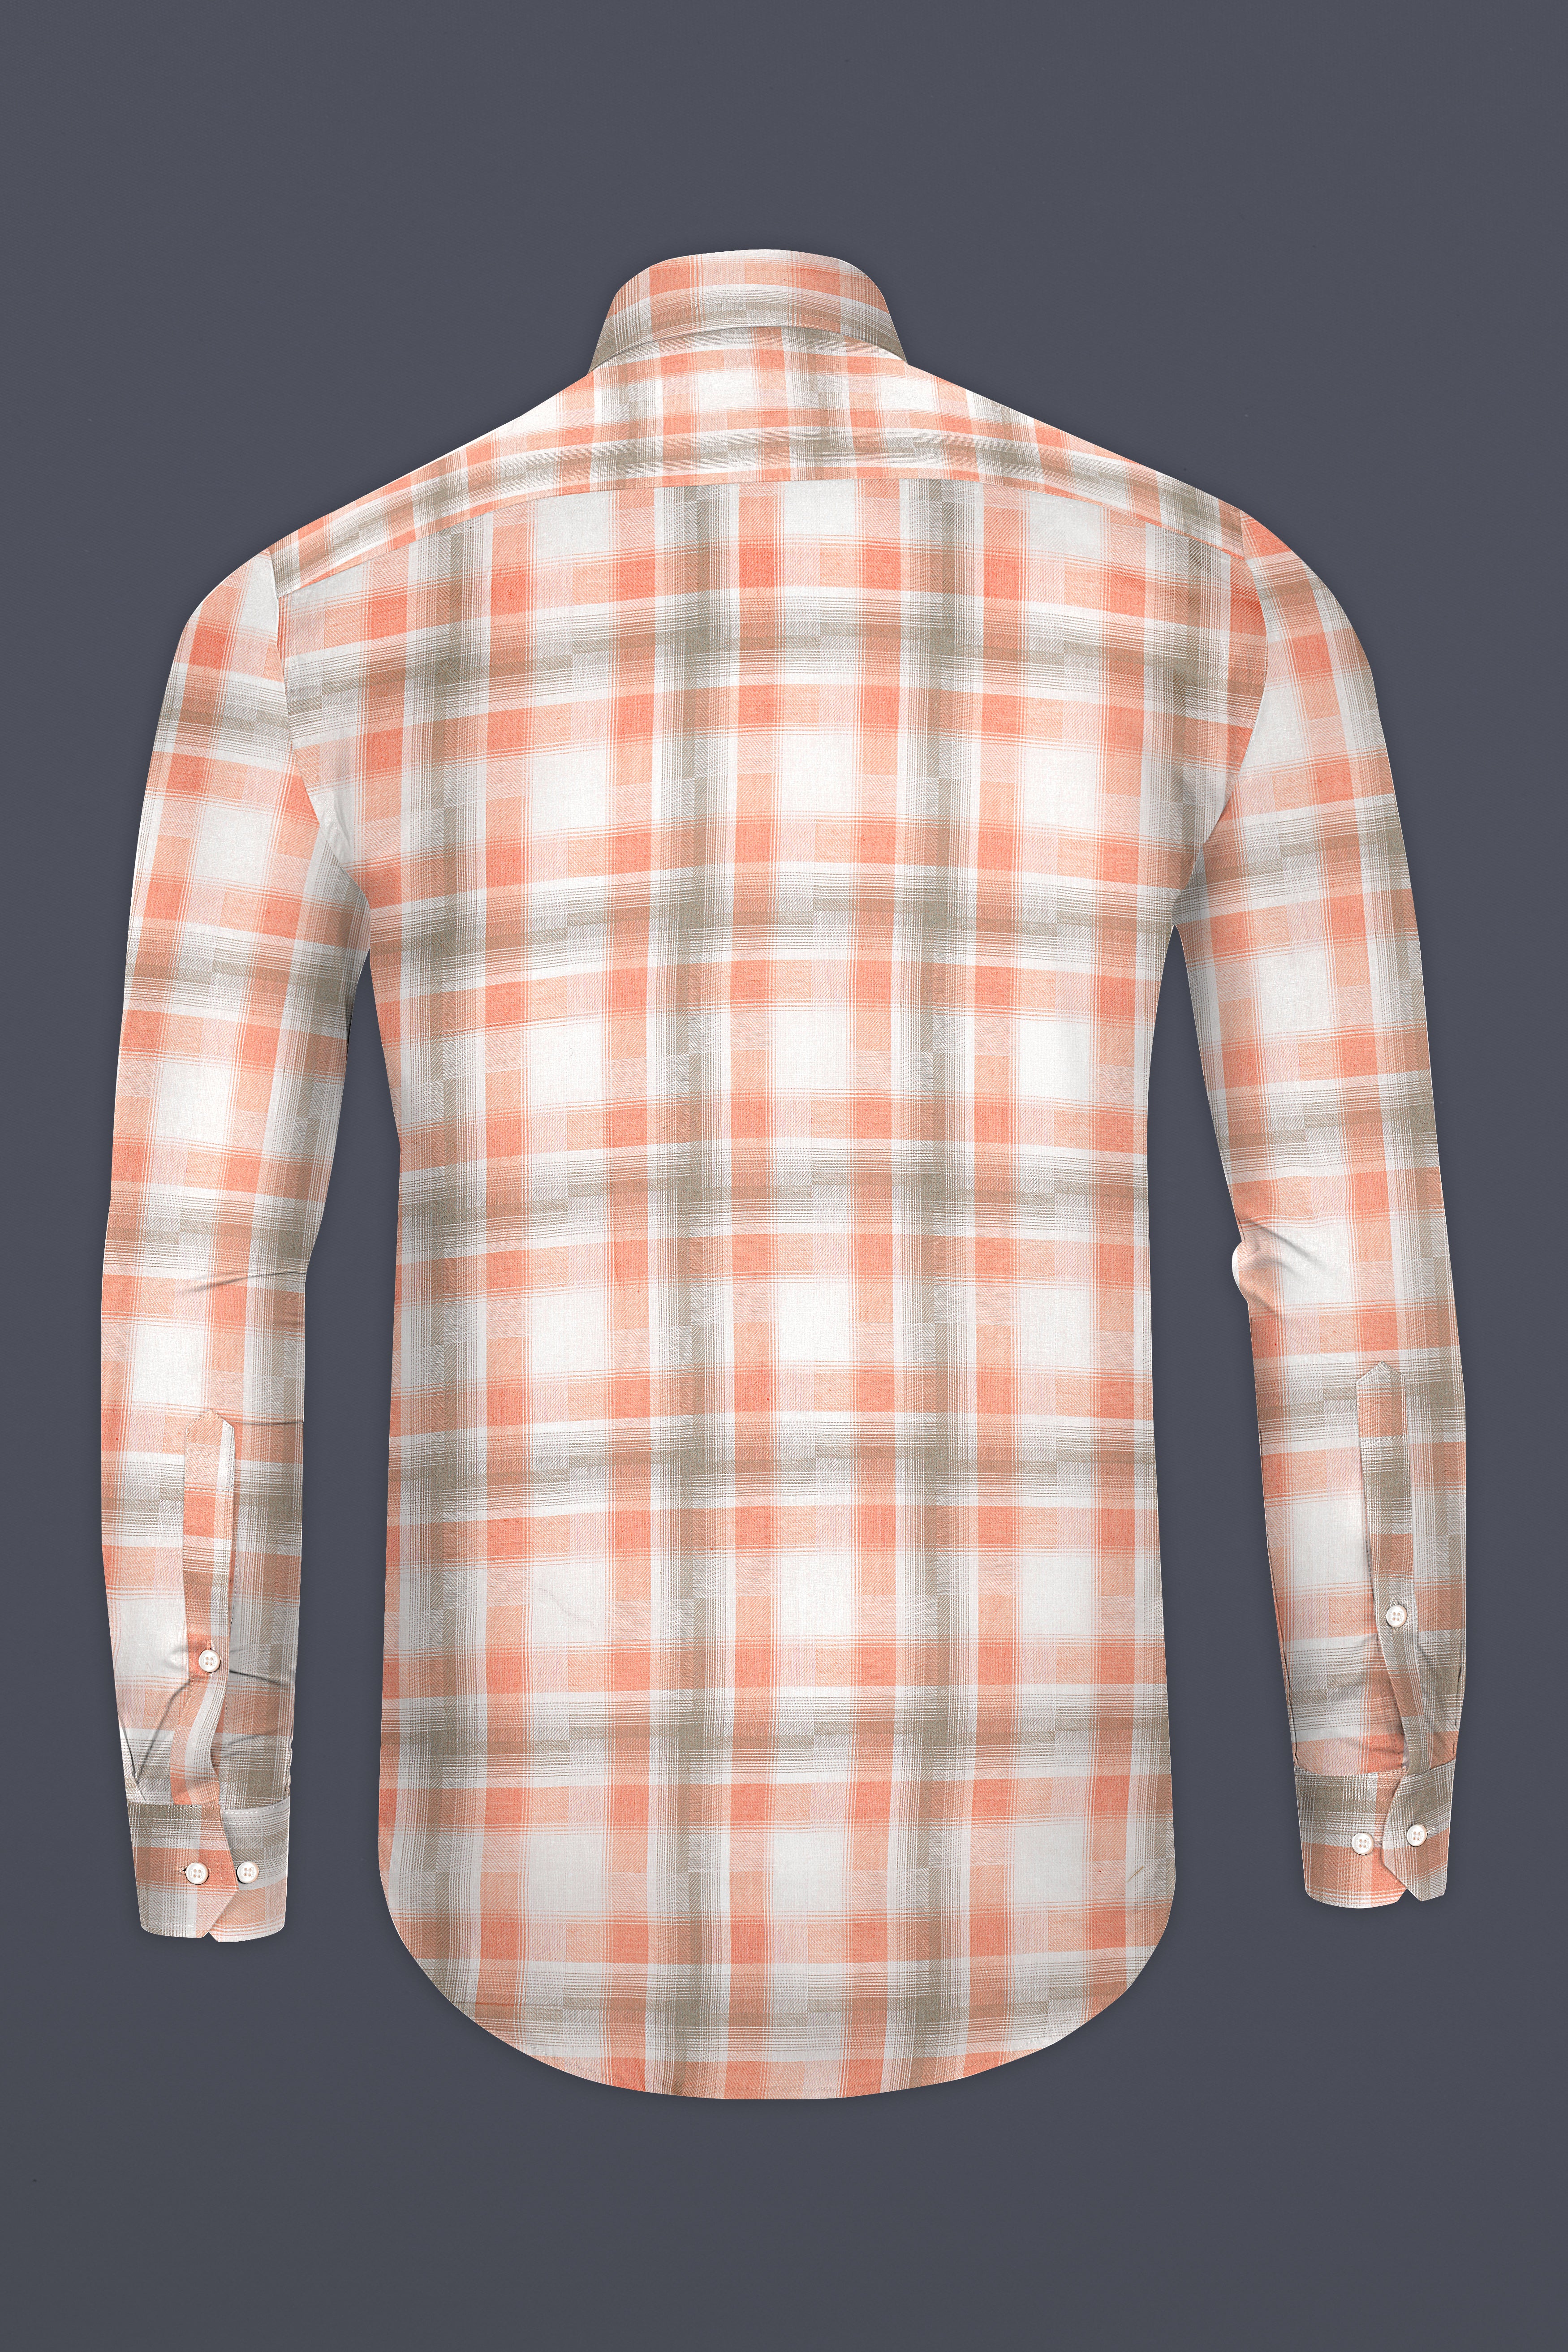 Beaver Brown and Zinnwaldite Twill Checkered Premium Cotton Shirt